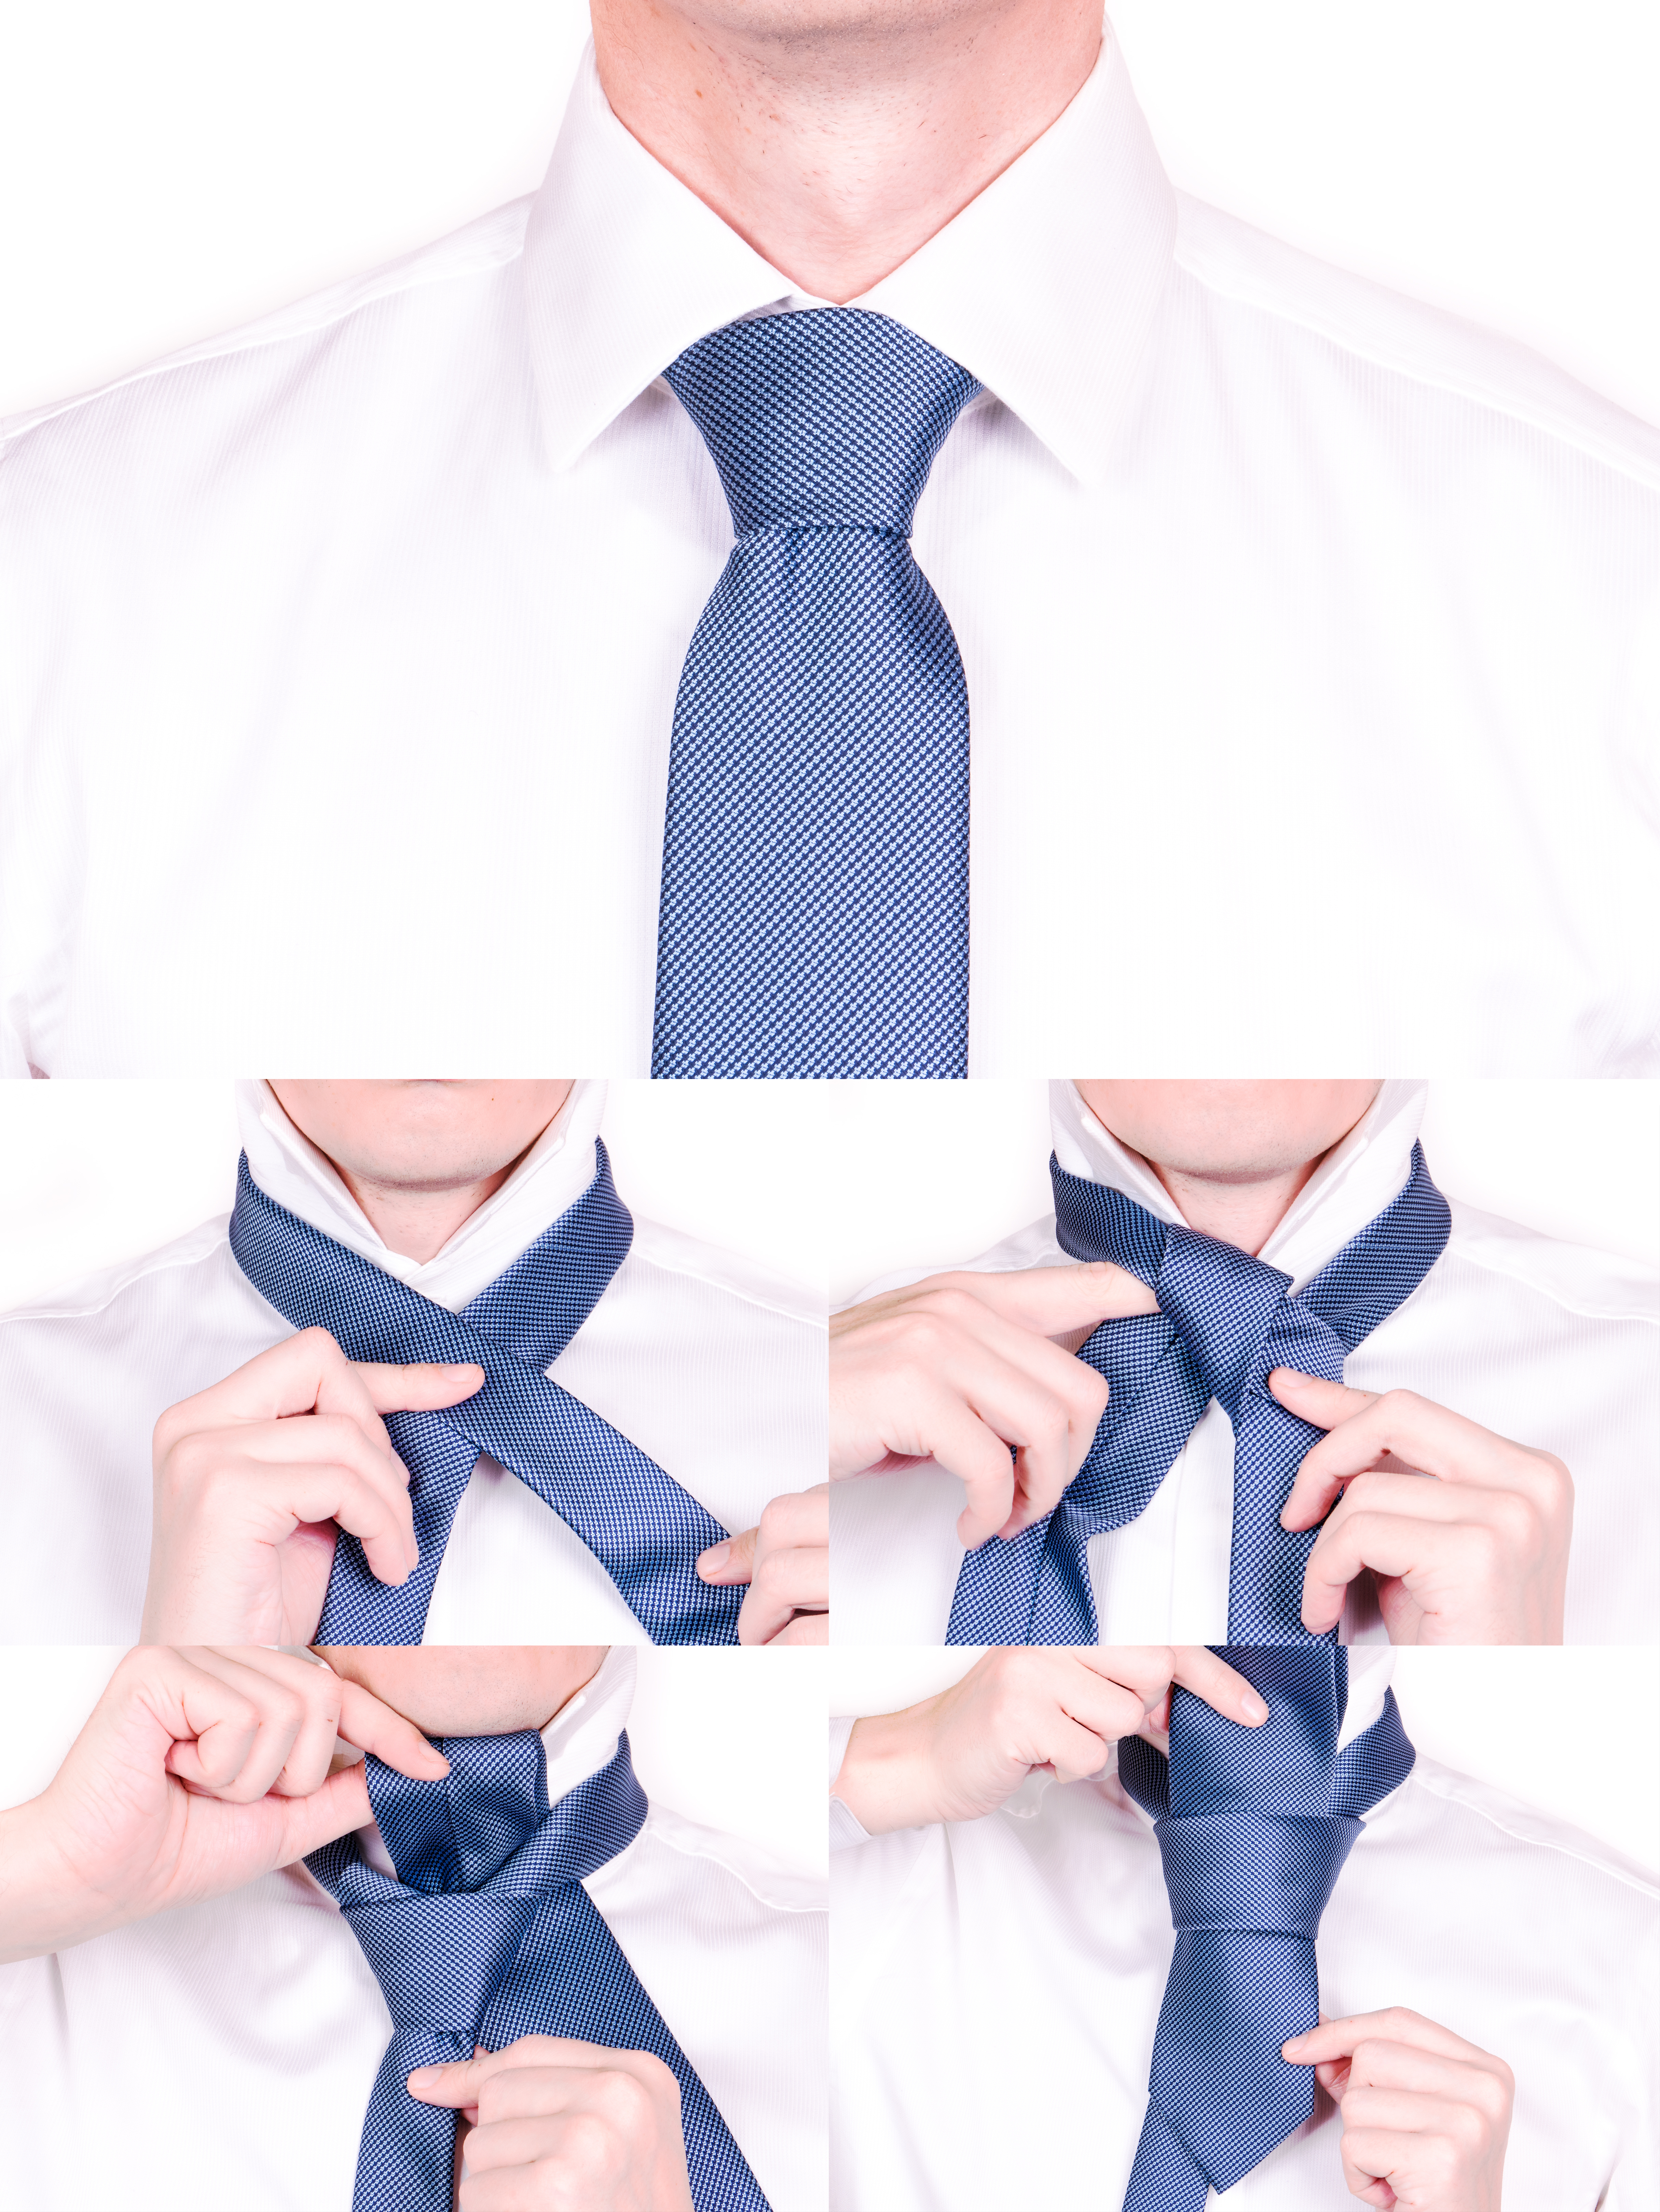 Как завязать галстук пошагово простой способ фото и видео